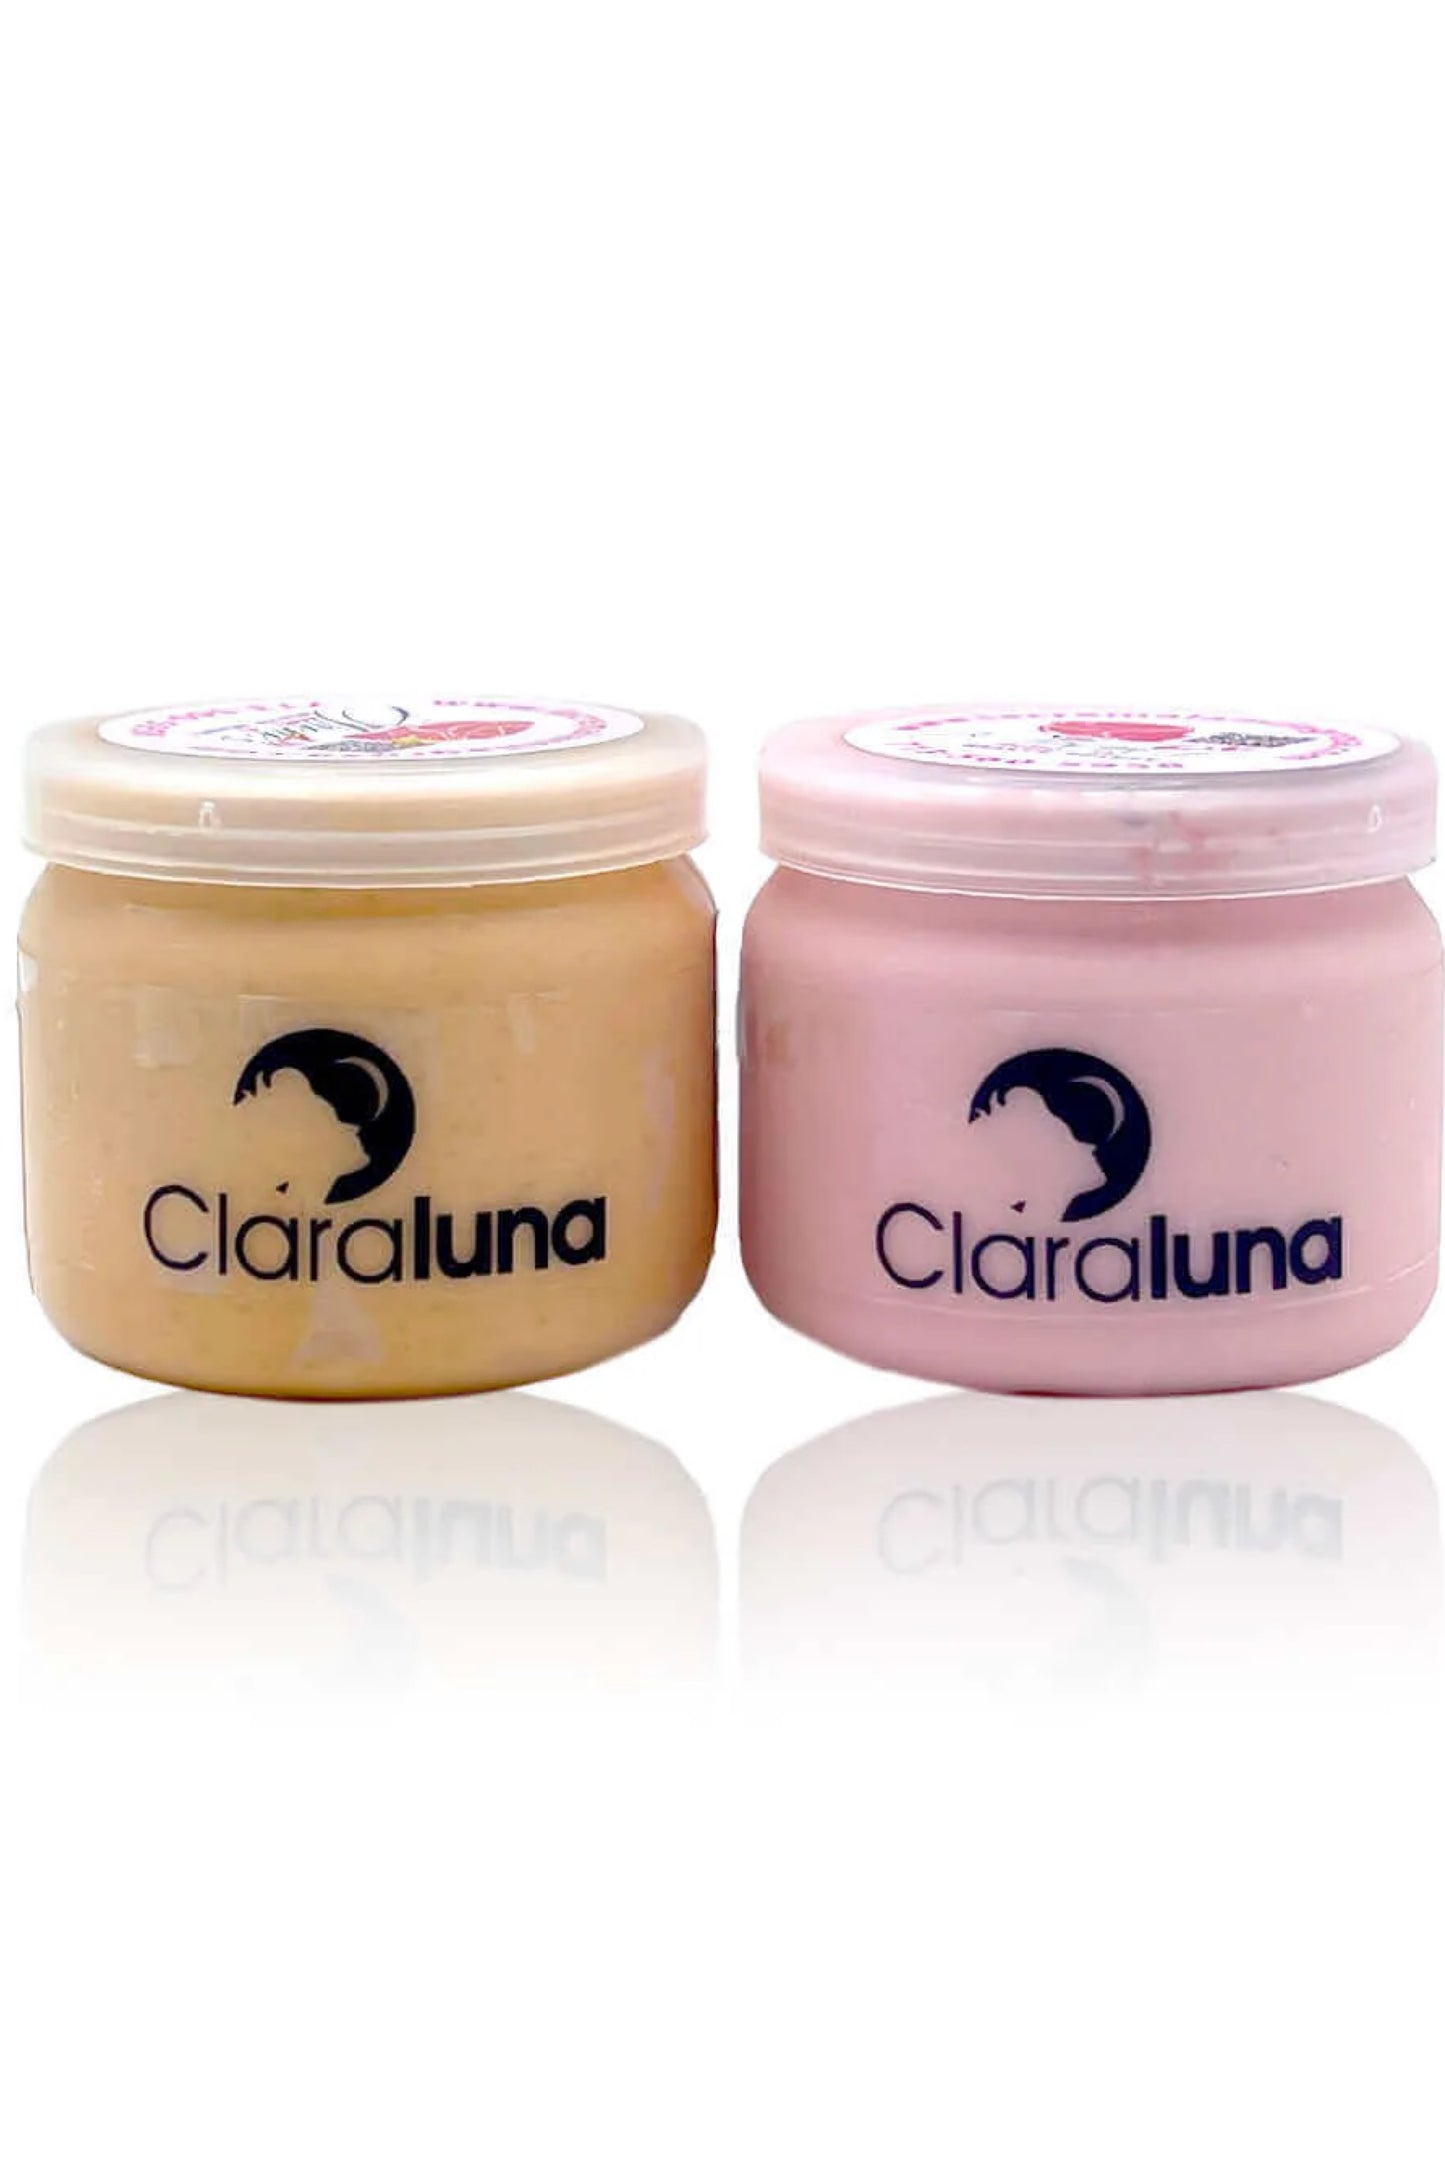 1- ClaraLuna crema facial día y noche